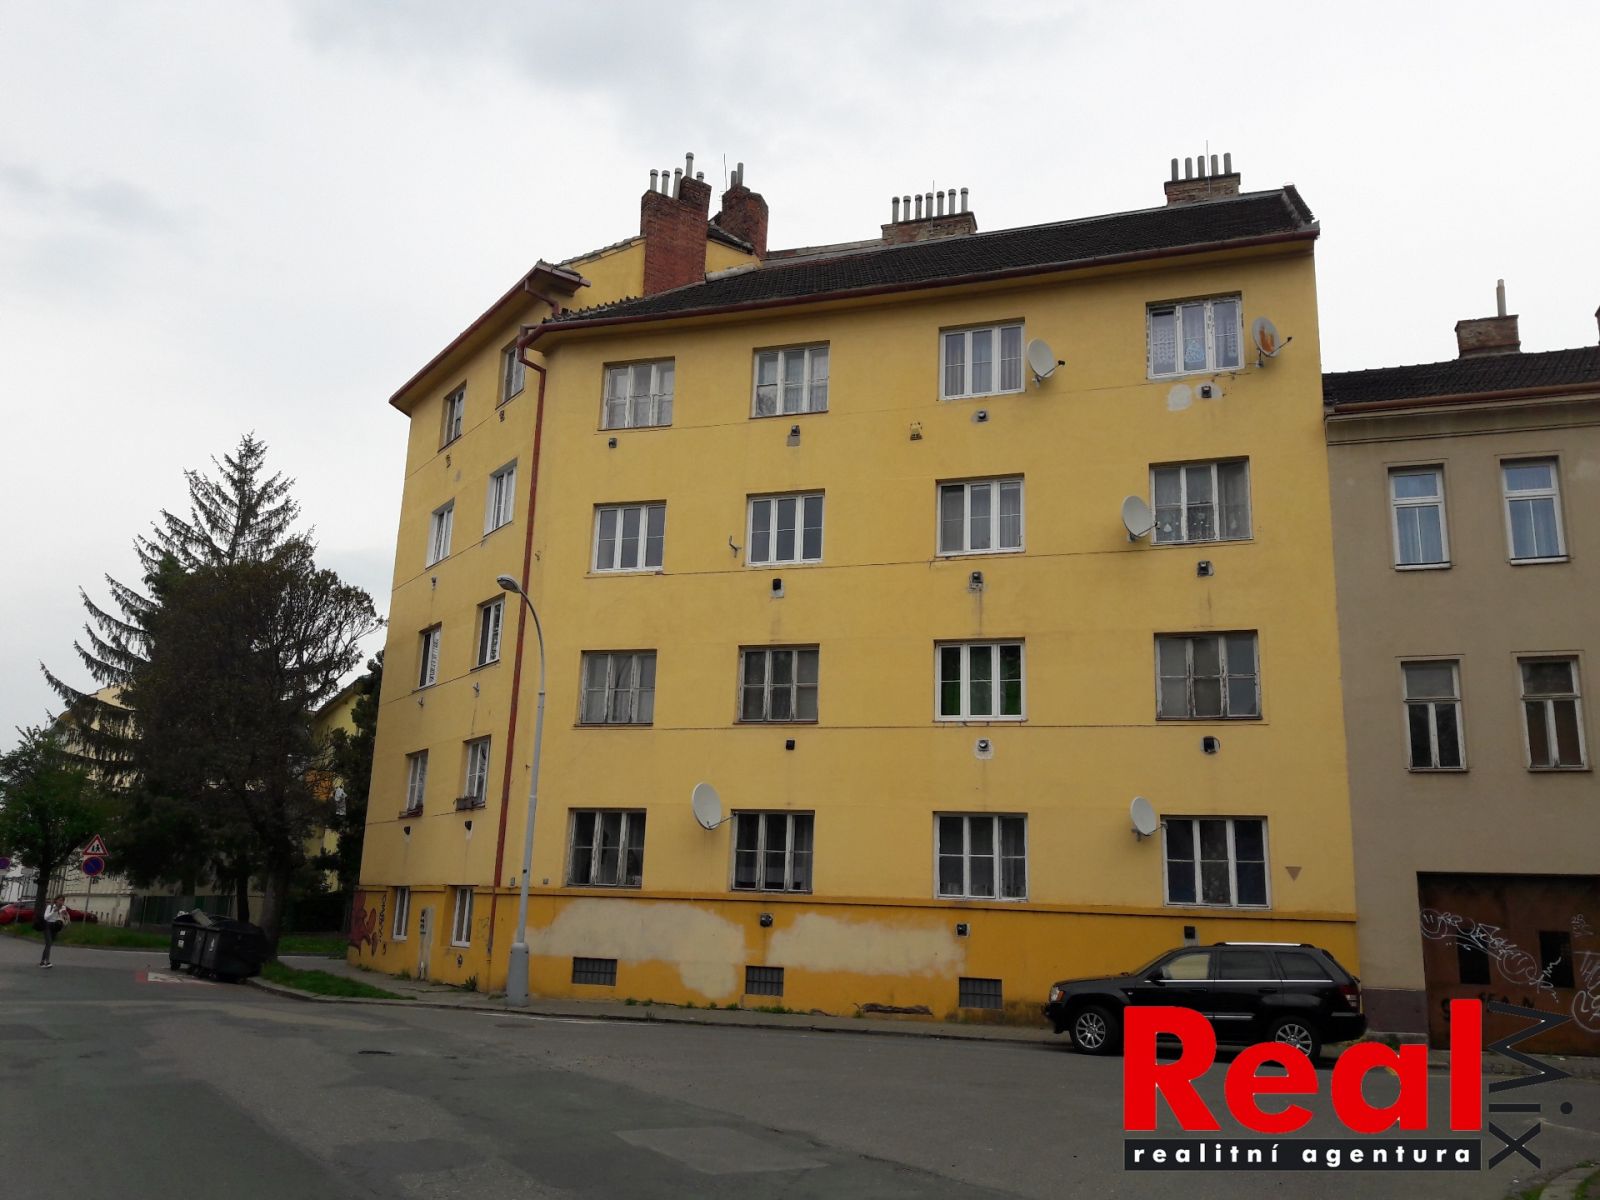 Prodej, bytový dům, 36 jednotek + sklepy + půdy, ul. Sekaninova / Husovická, Brno - Husovice